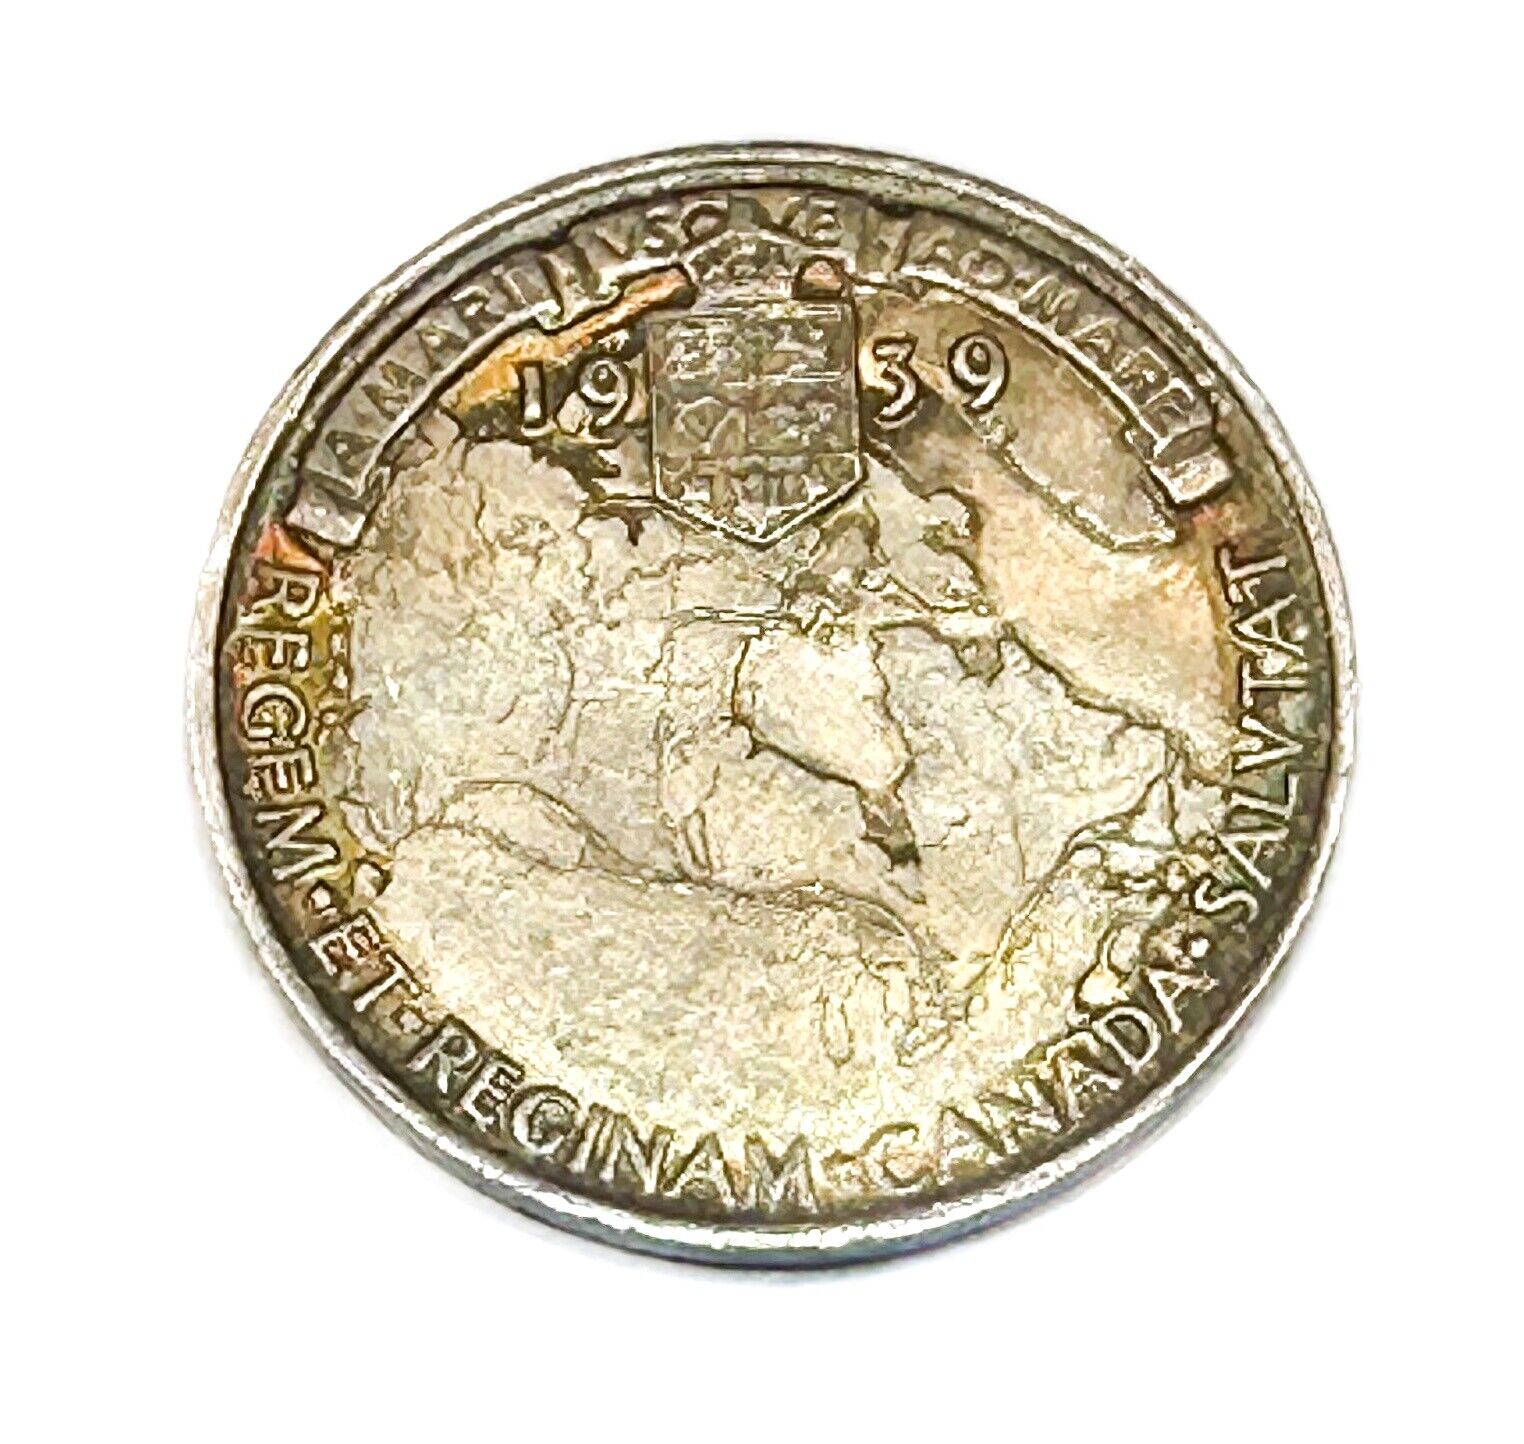 1939 Canada Royal Visit Medallion George VI High Luster Sterling Silver 925 Gem